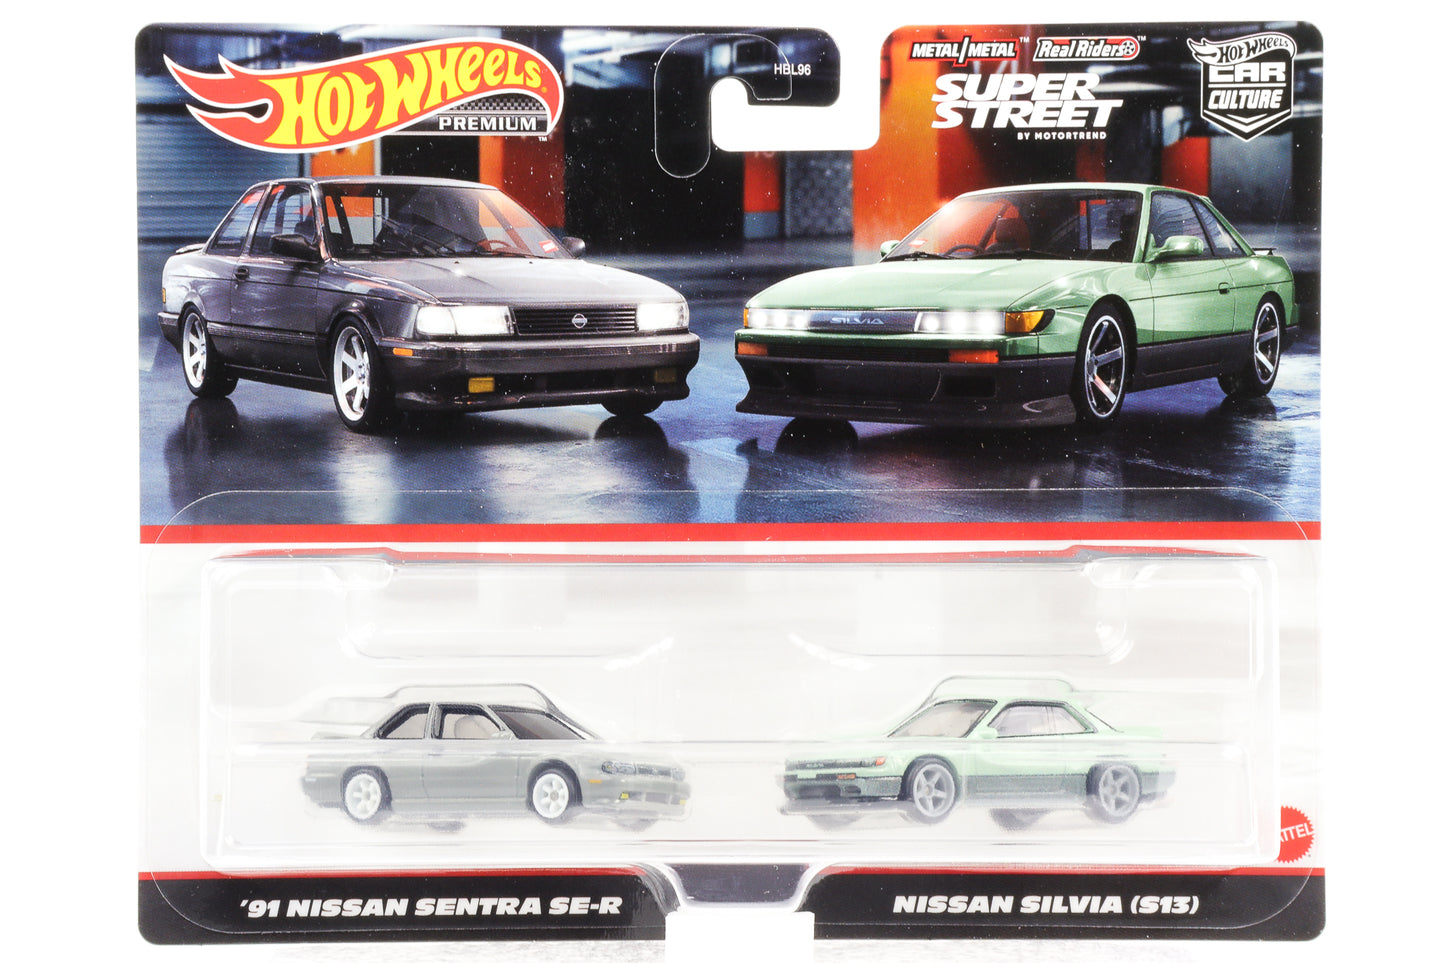 1:64 Juego de 2 1991 Nissan Sentra SE-R + Nissan Silvia (S13) Hot Wheels Premium